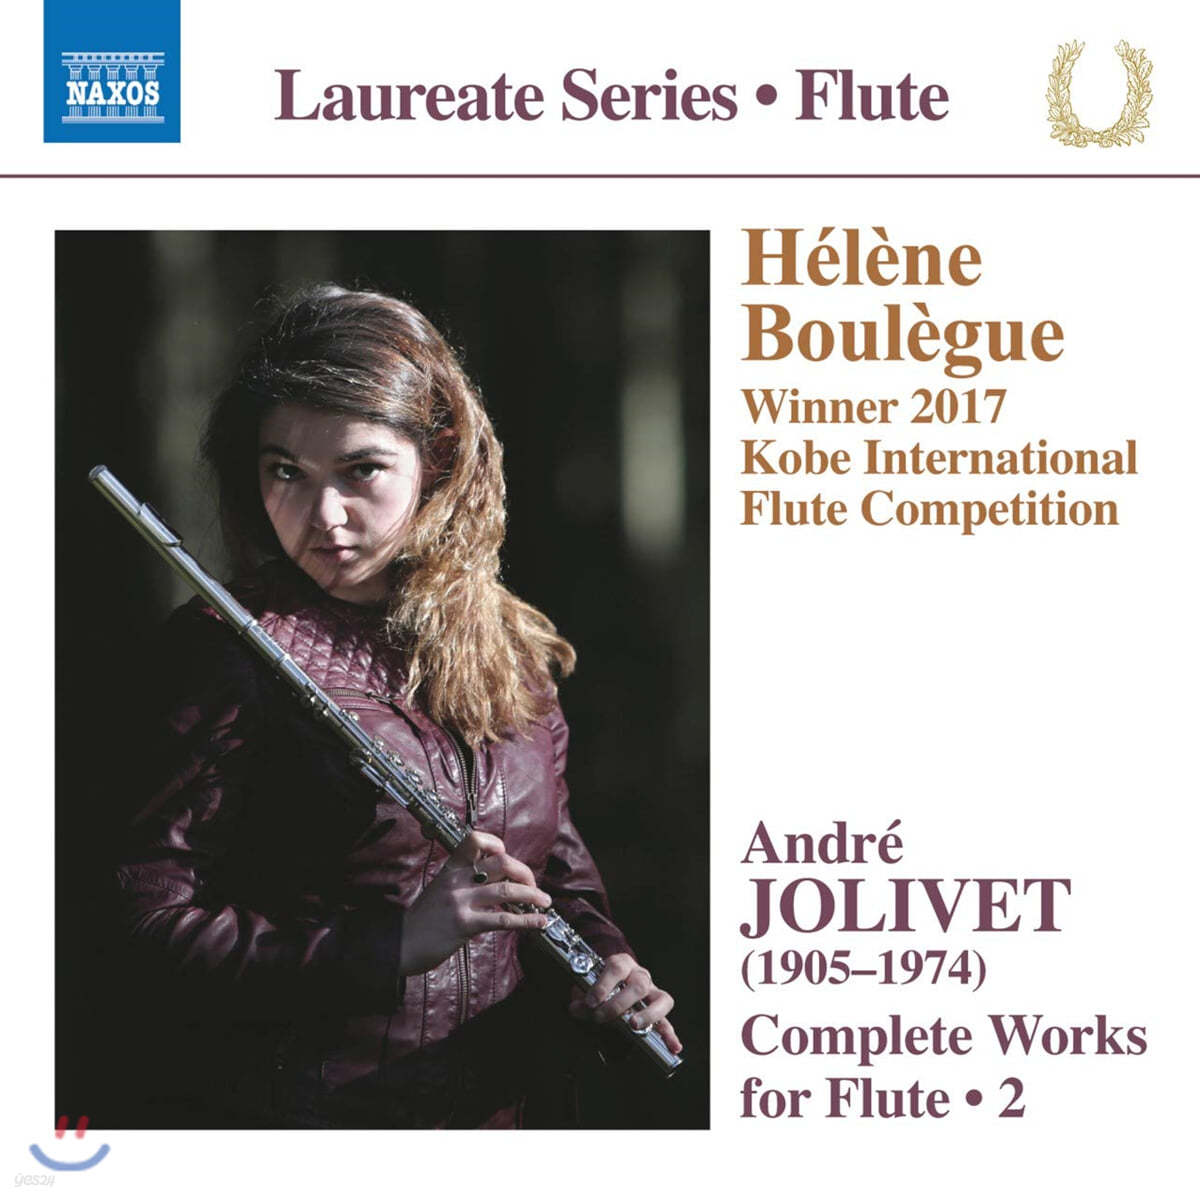 Helene Boulegue 앙드레 졸리베: 플루트 전곡 작품 2집 (Andre Jolivet: Complete Works for Flute Vol. 2)